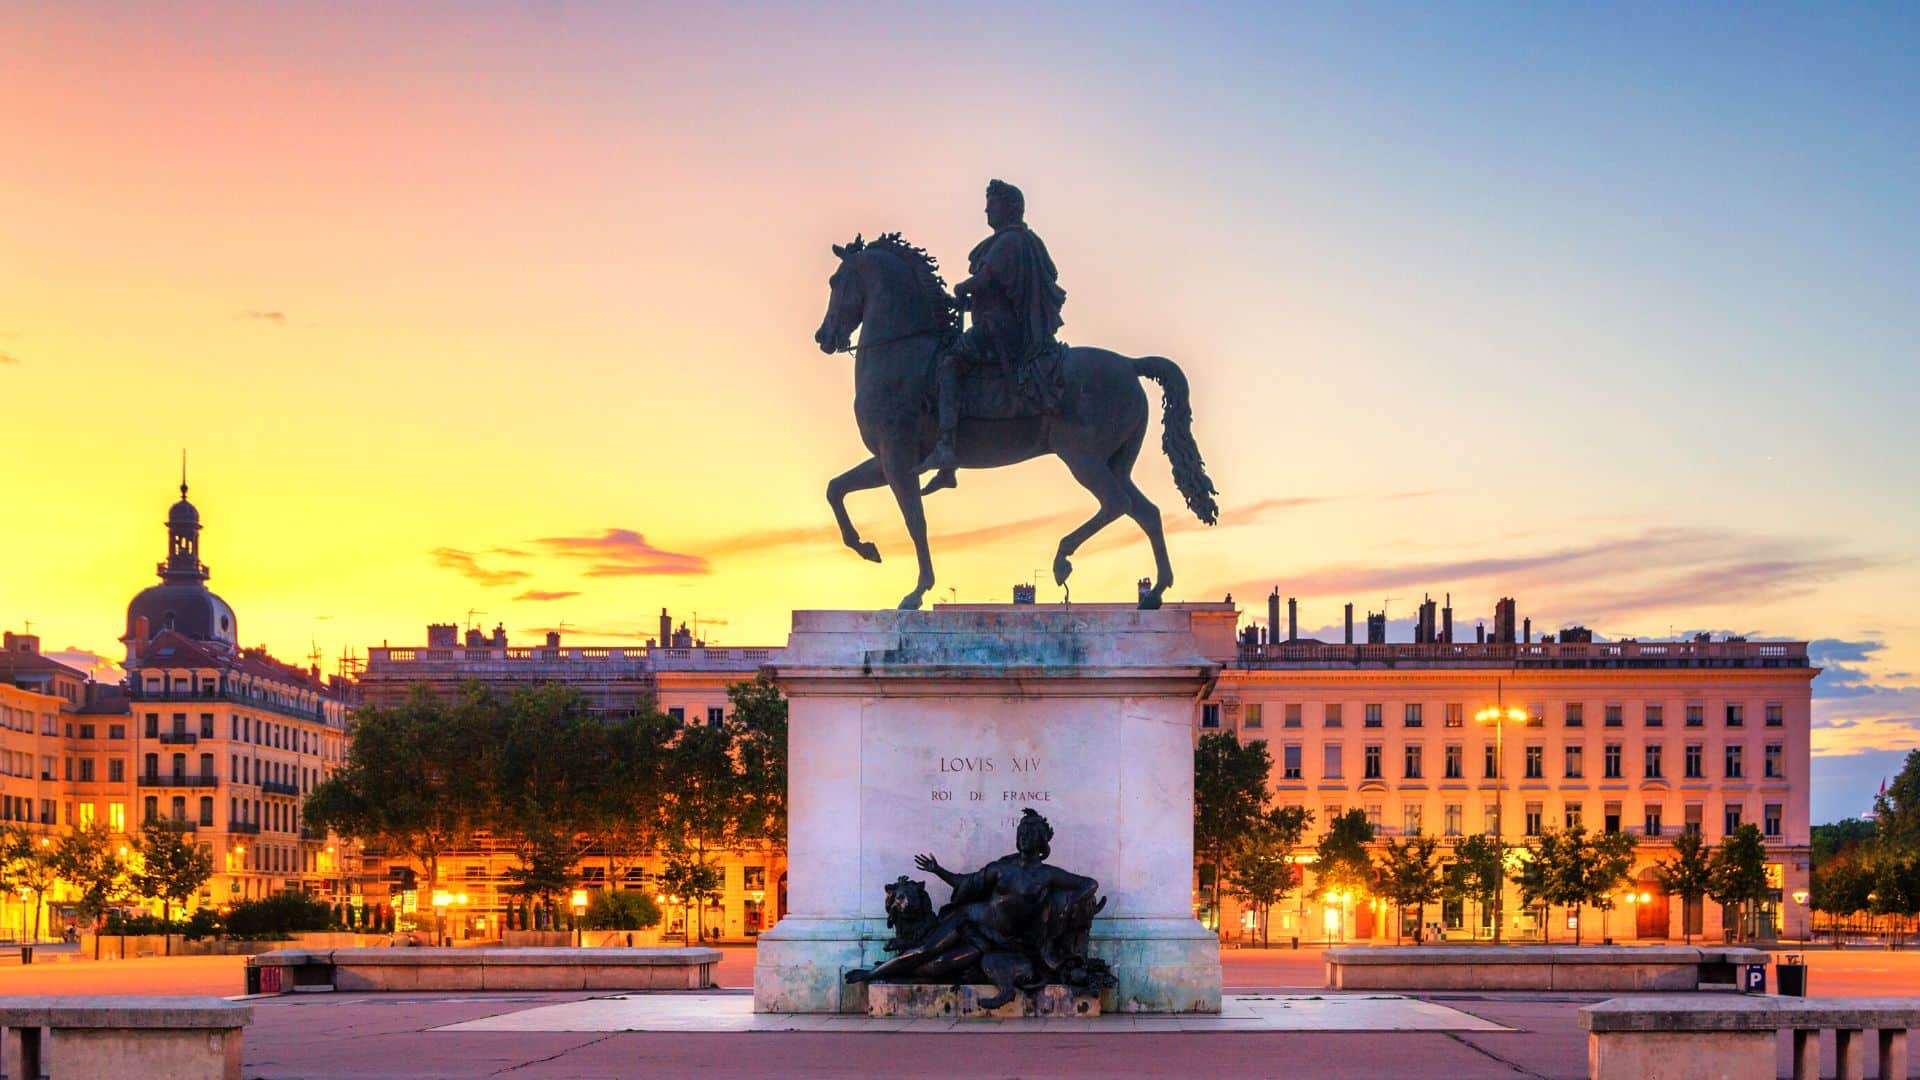 Lyon Statut de Louis XIV sur la place Bellecour lors d'un coucher de soleil